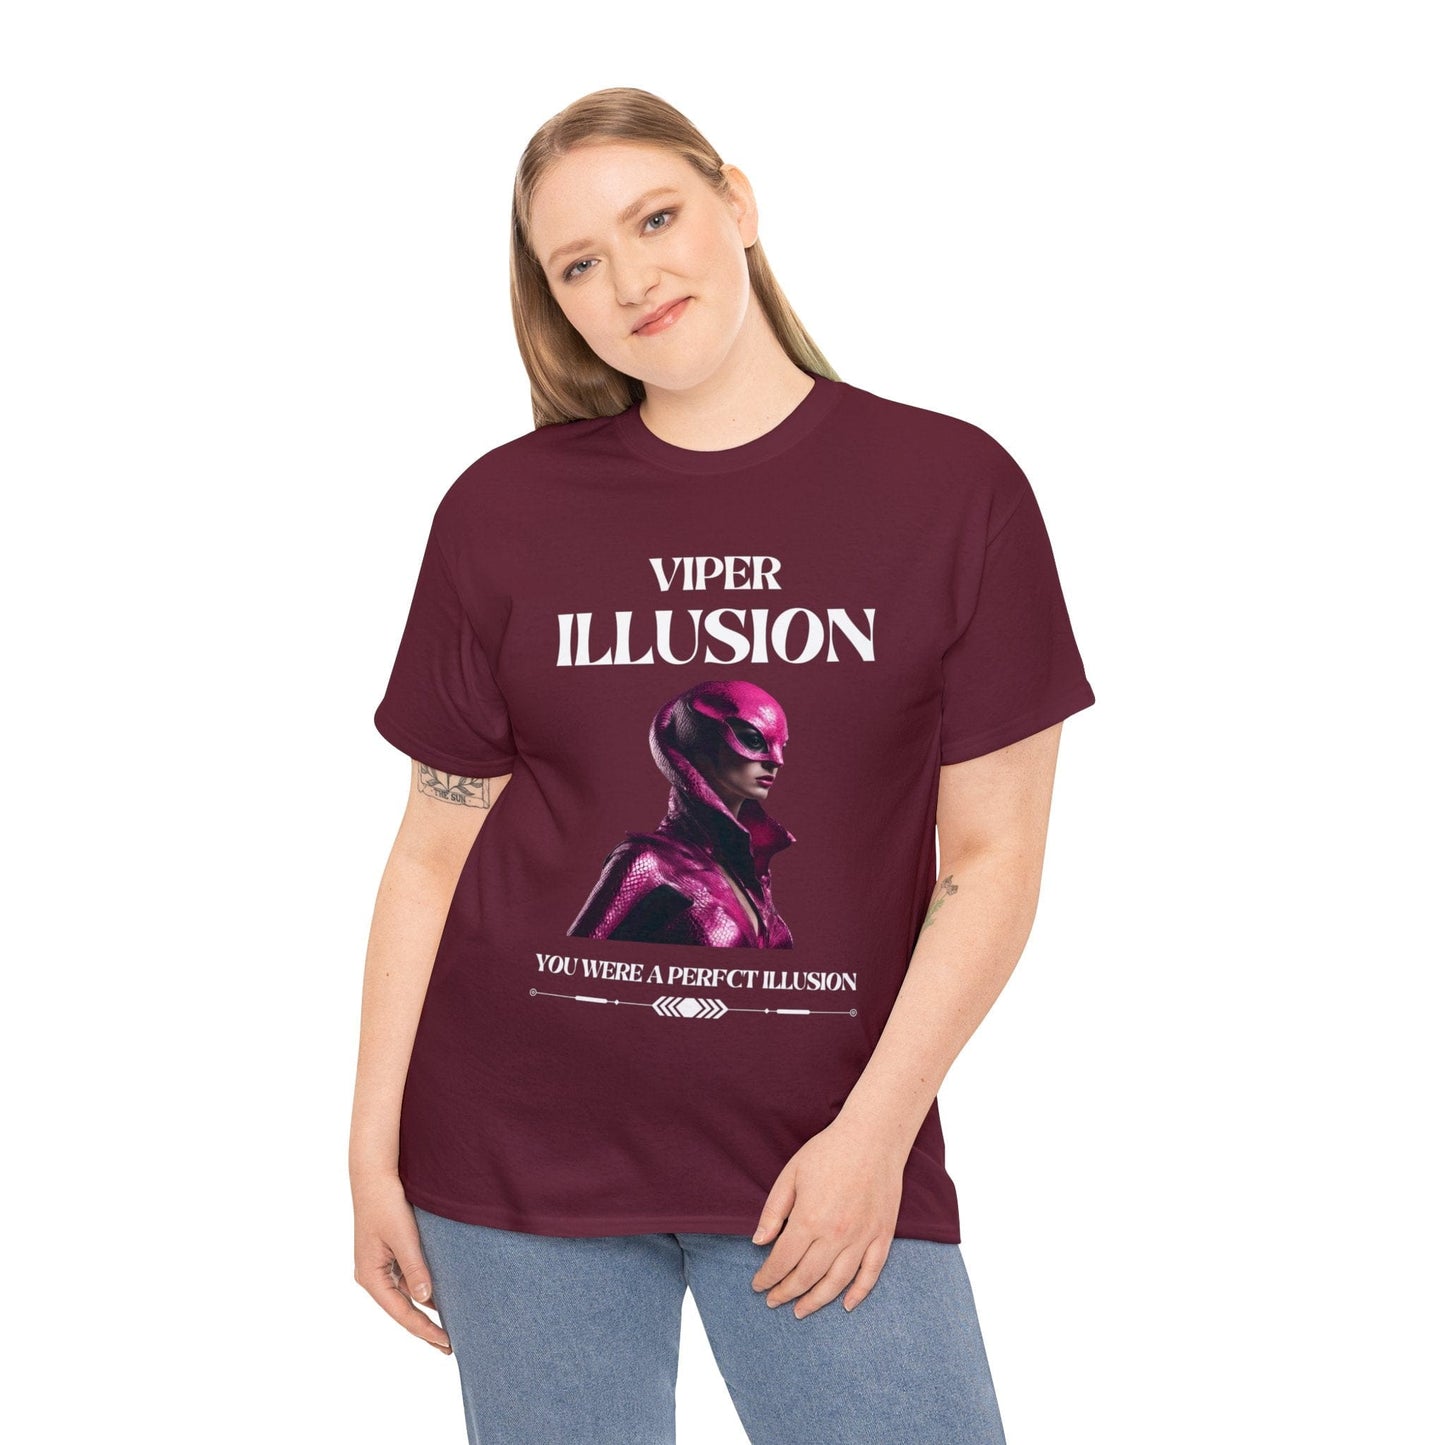 Viper Illusion Tee Flashlander